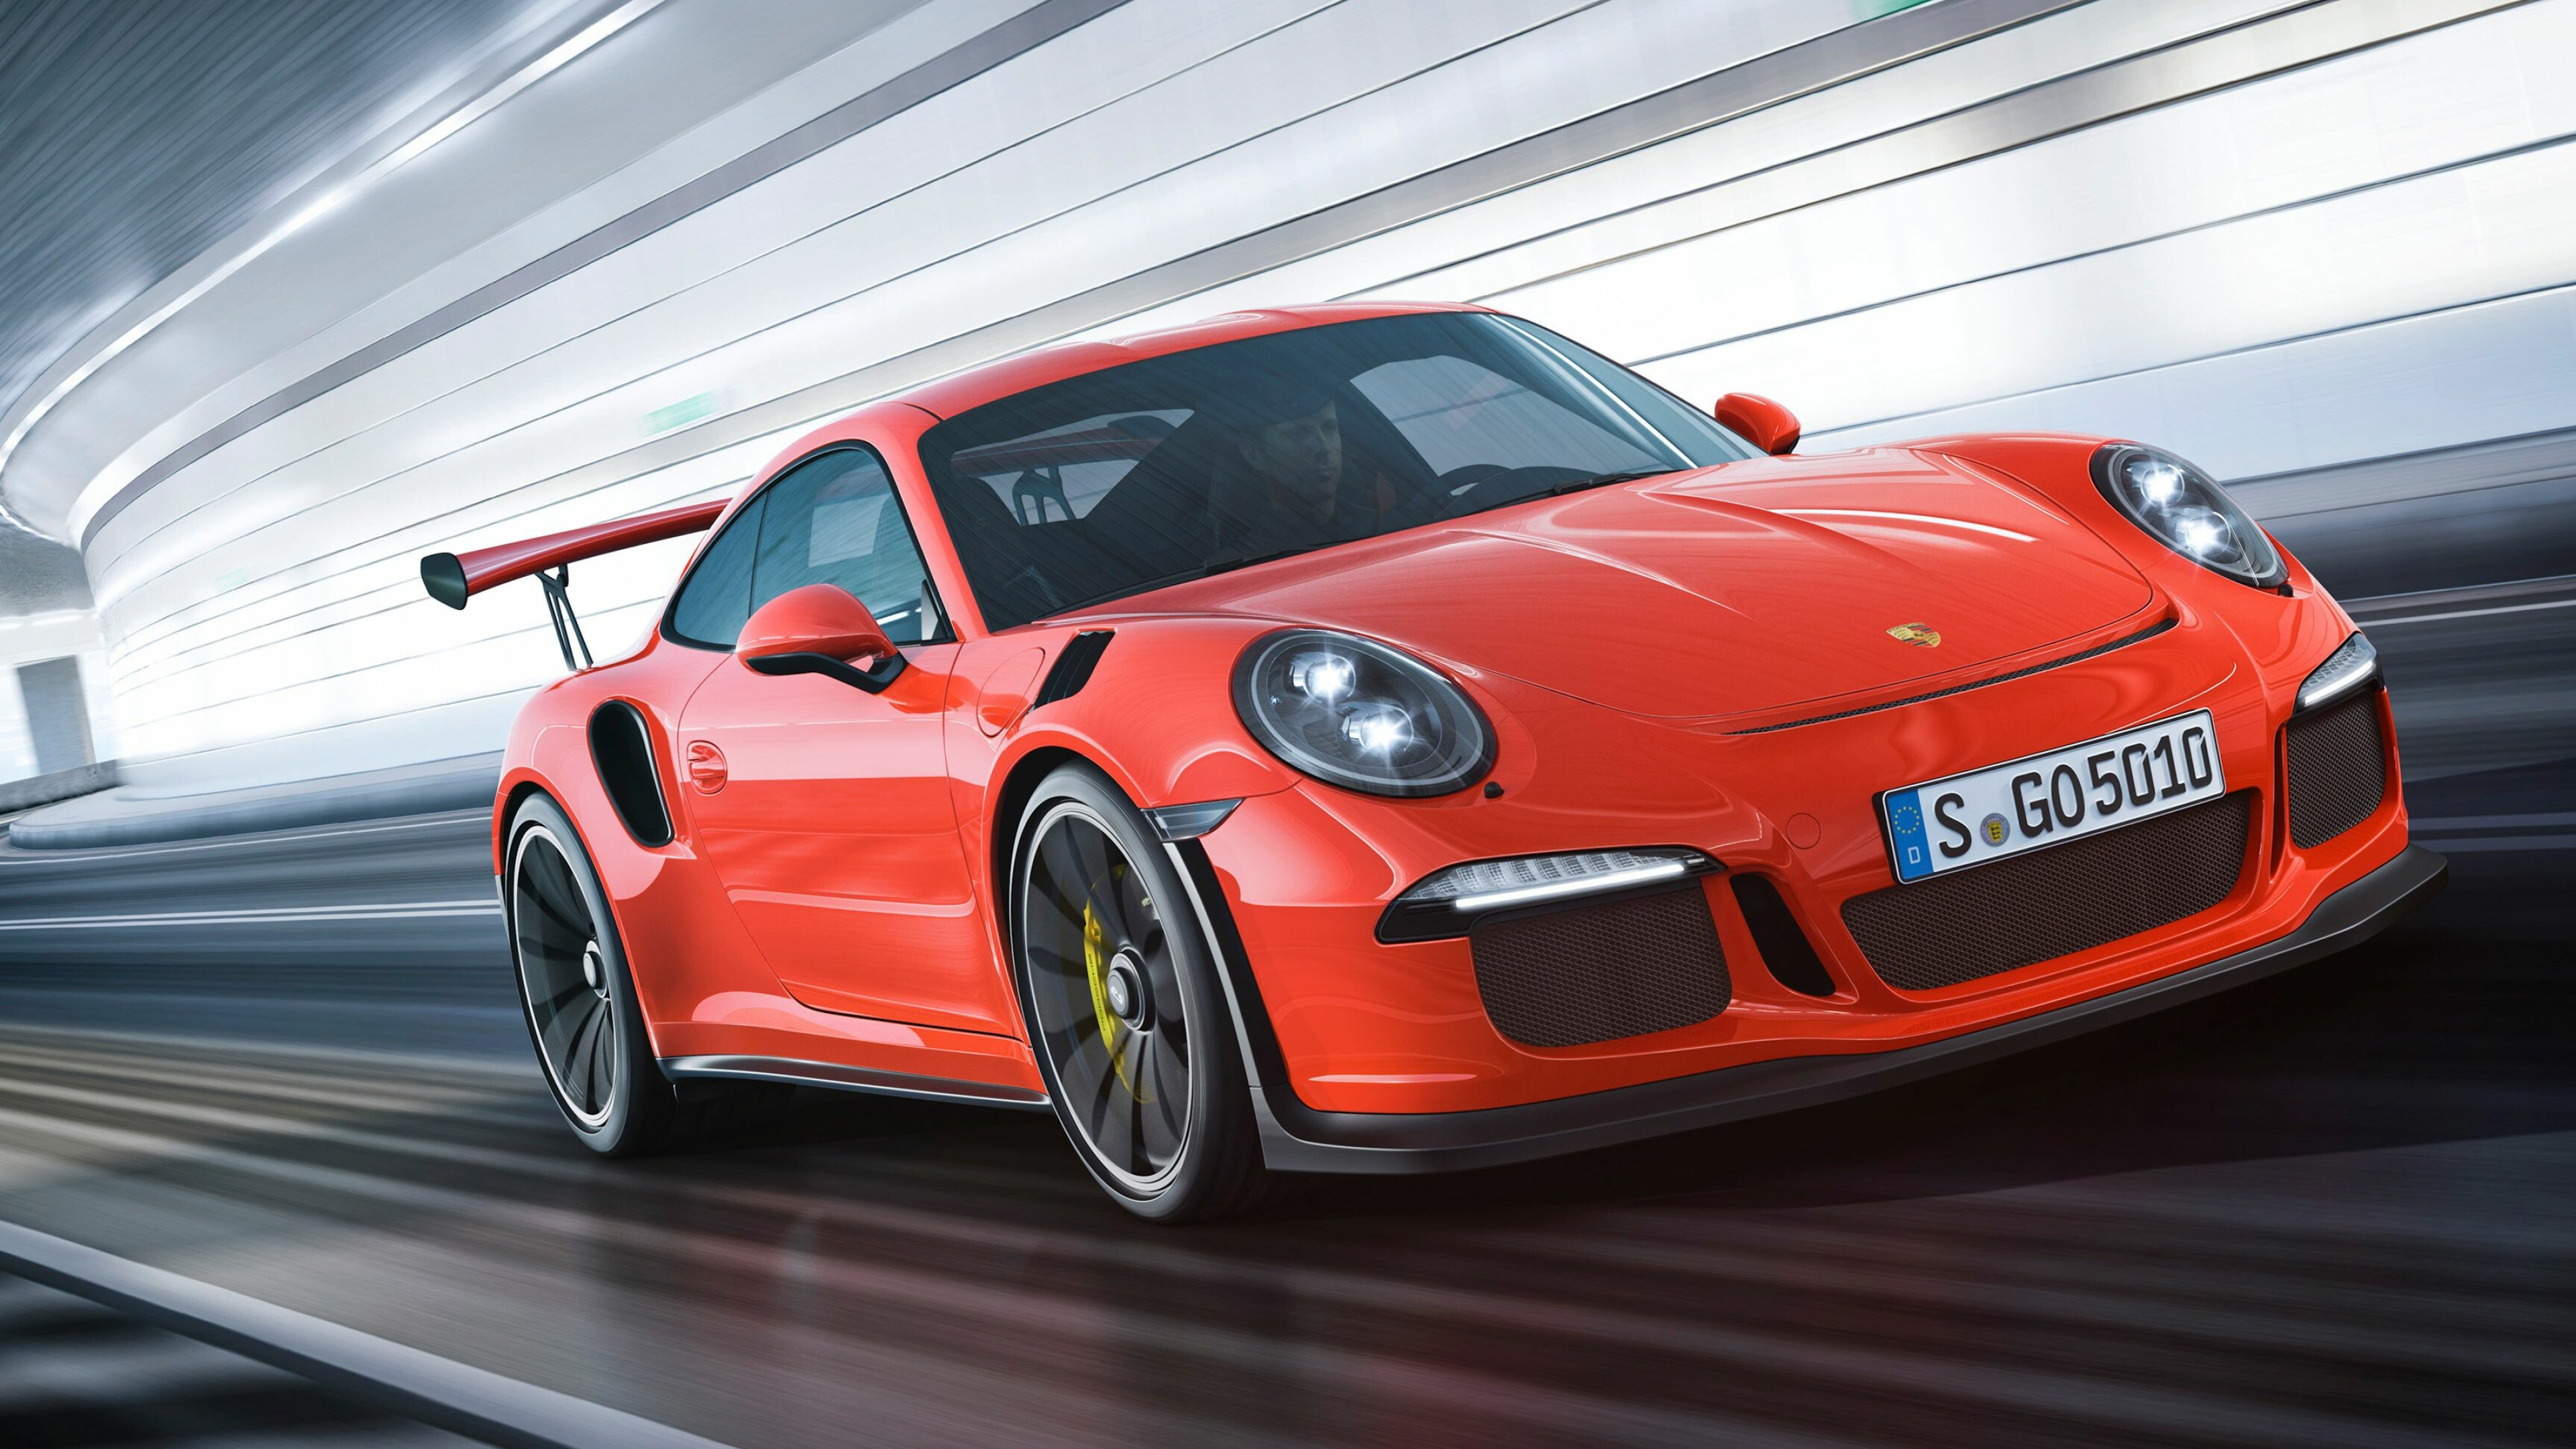 Porsche: 911 GT3, A high-performance homologation model of the 911 sports car. 3840x2160 4K Wallpaper.